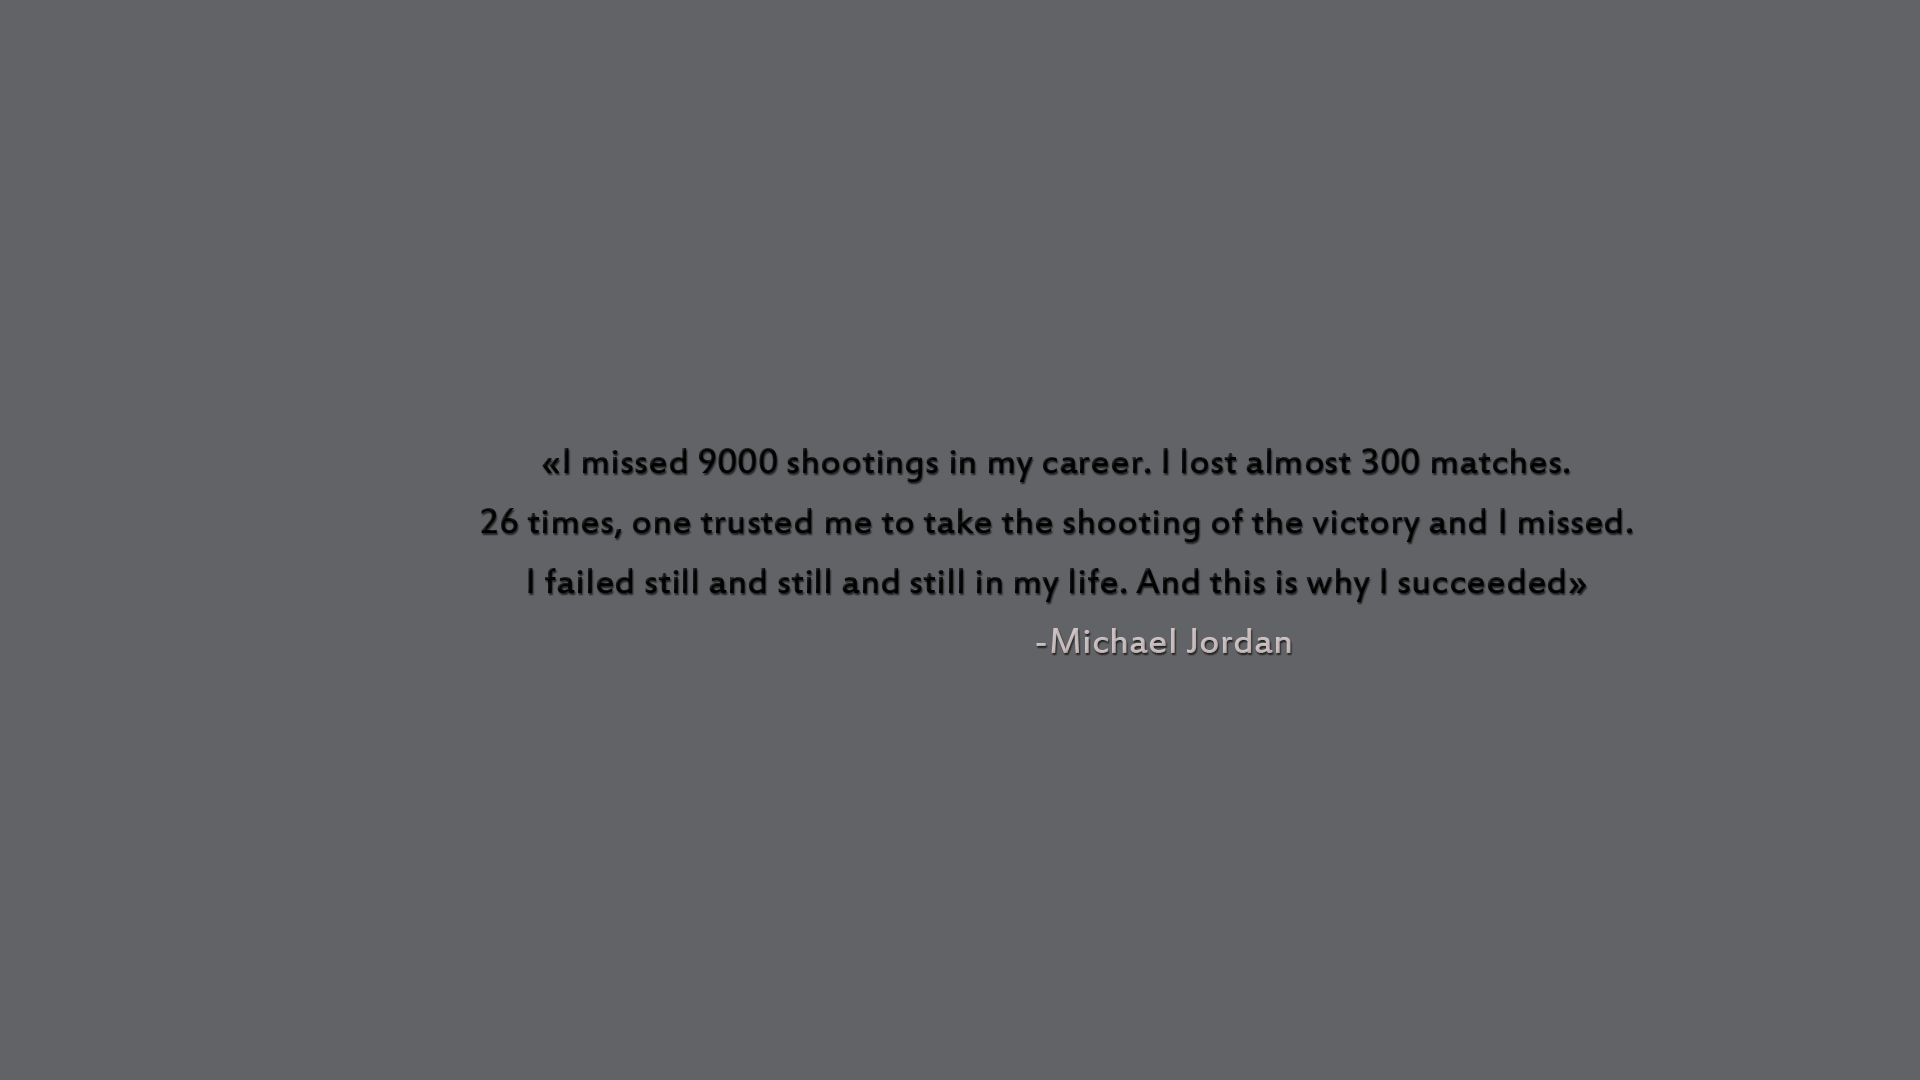 Michael Jordan Quote Hd Wallpapers Free Download